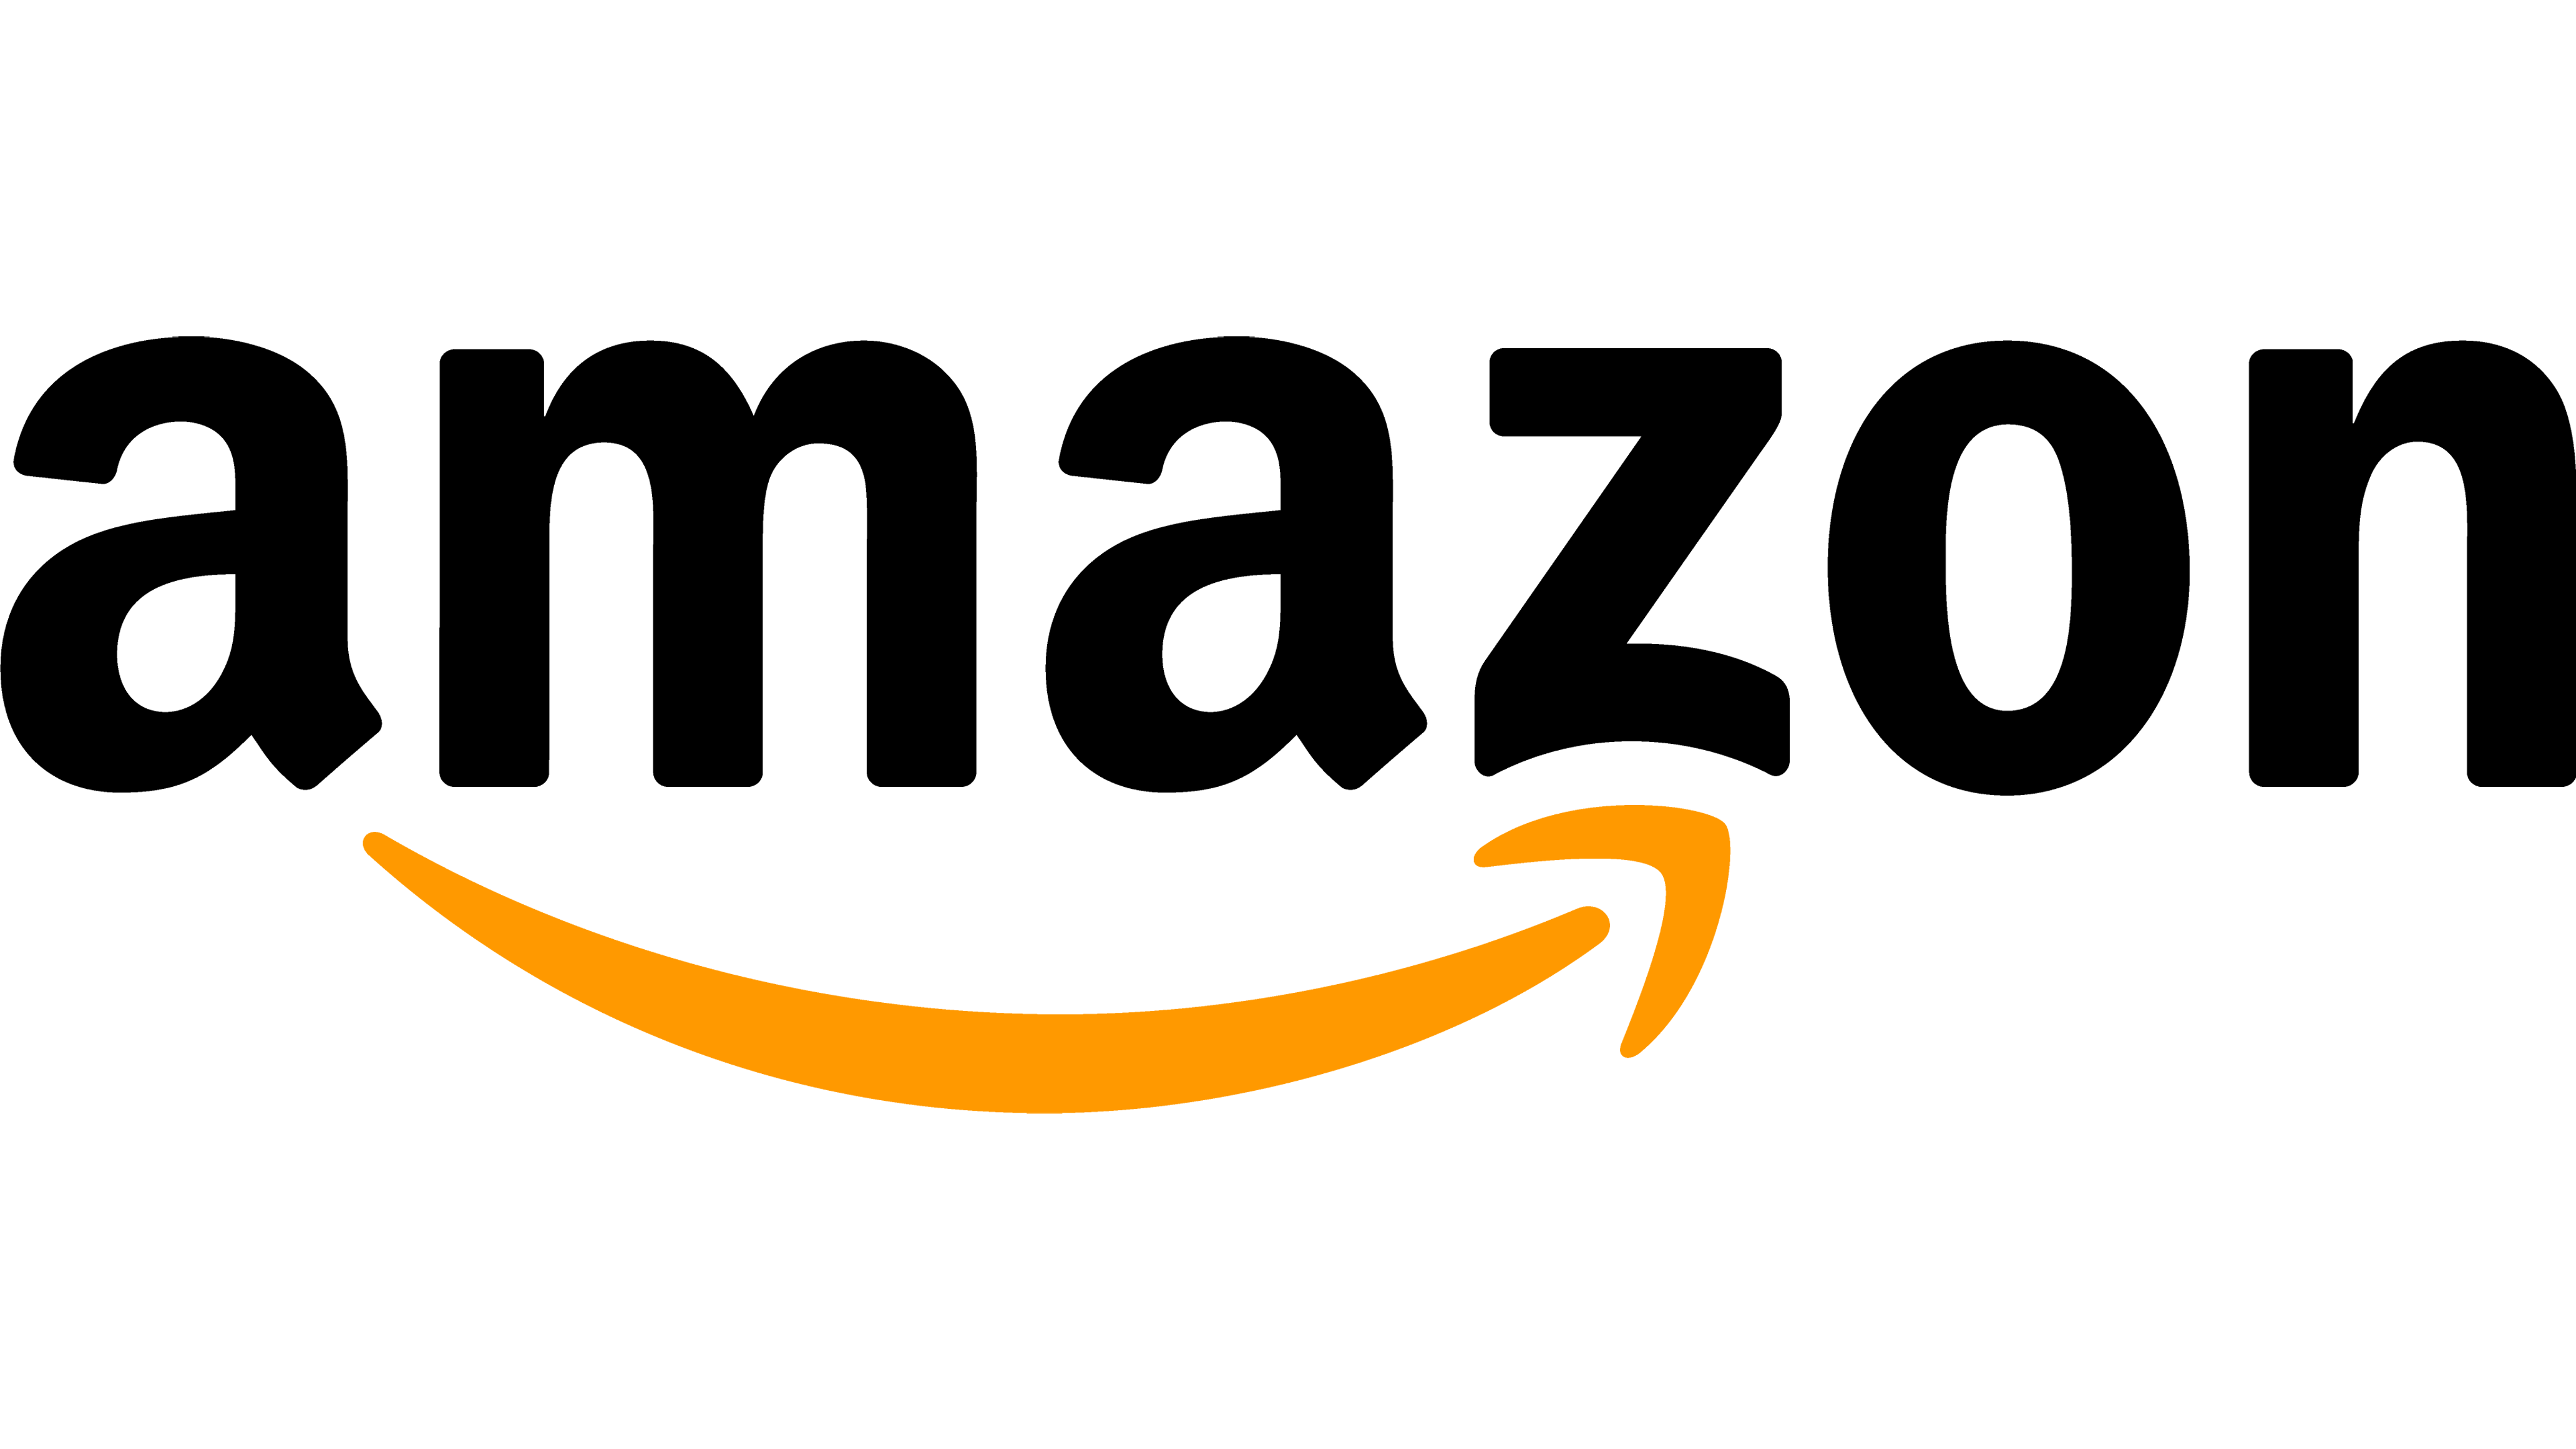 Consigue "La pandiolla sobre ruedas" en Amazon